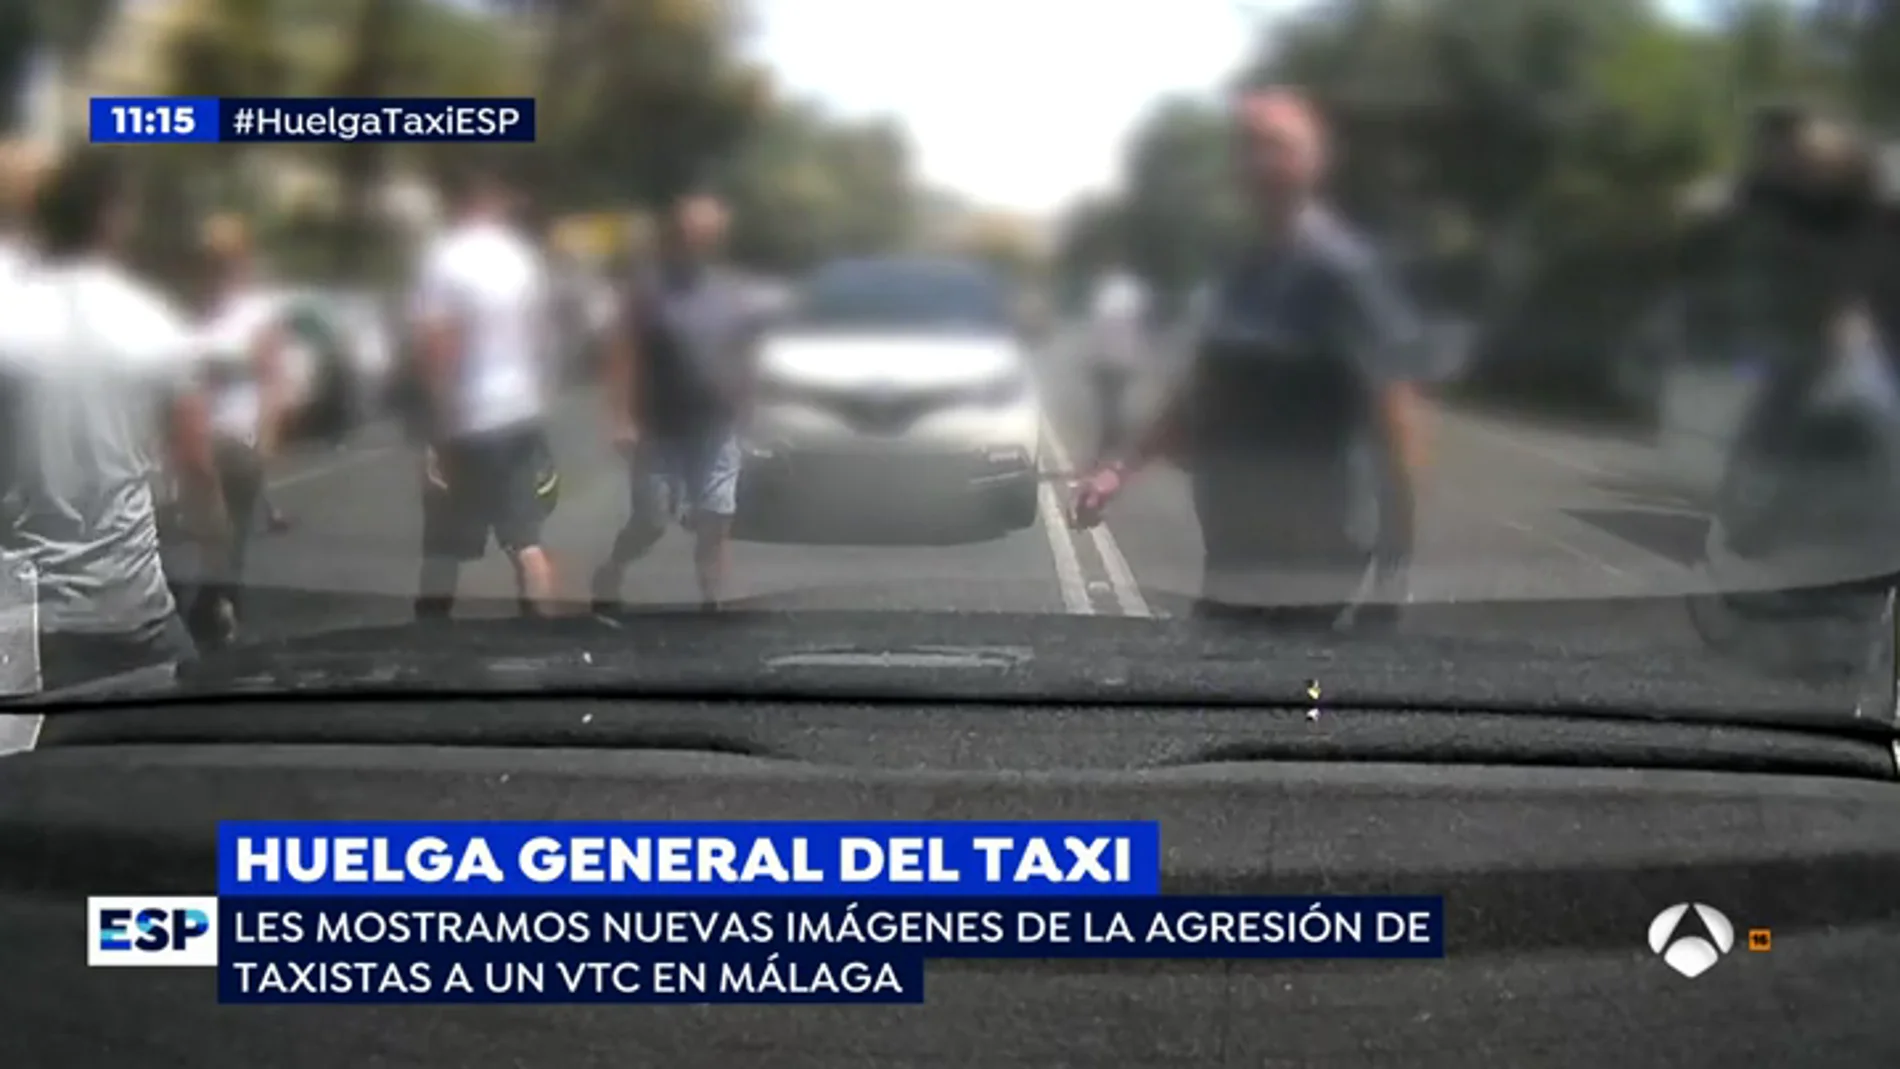 EP nuevas imagenes agresion taxi